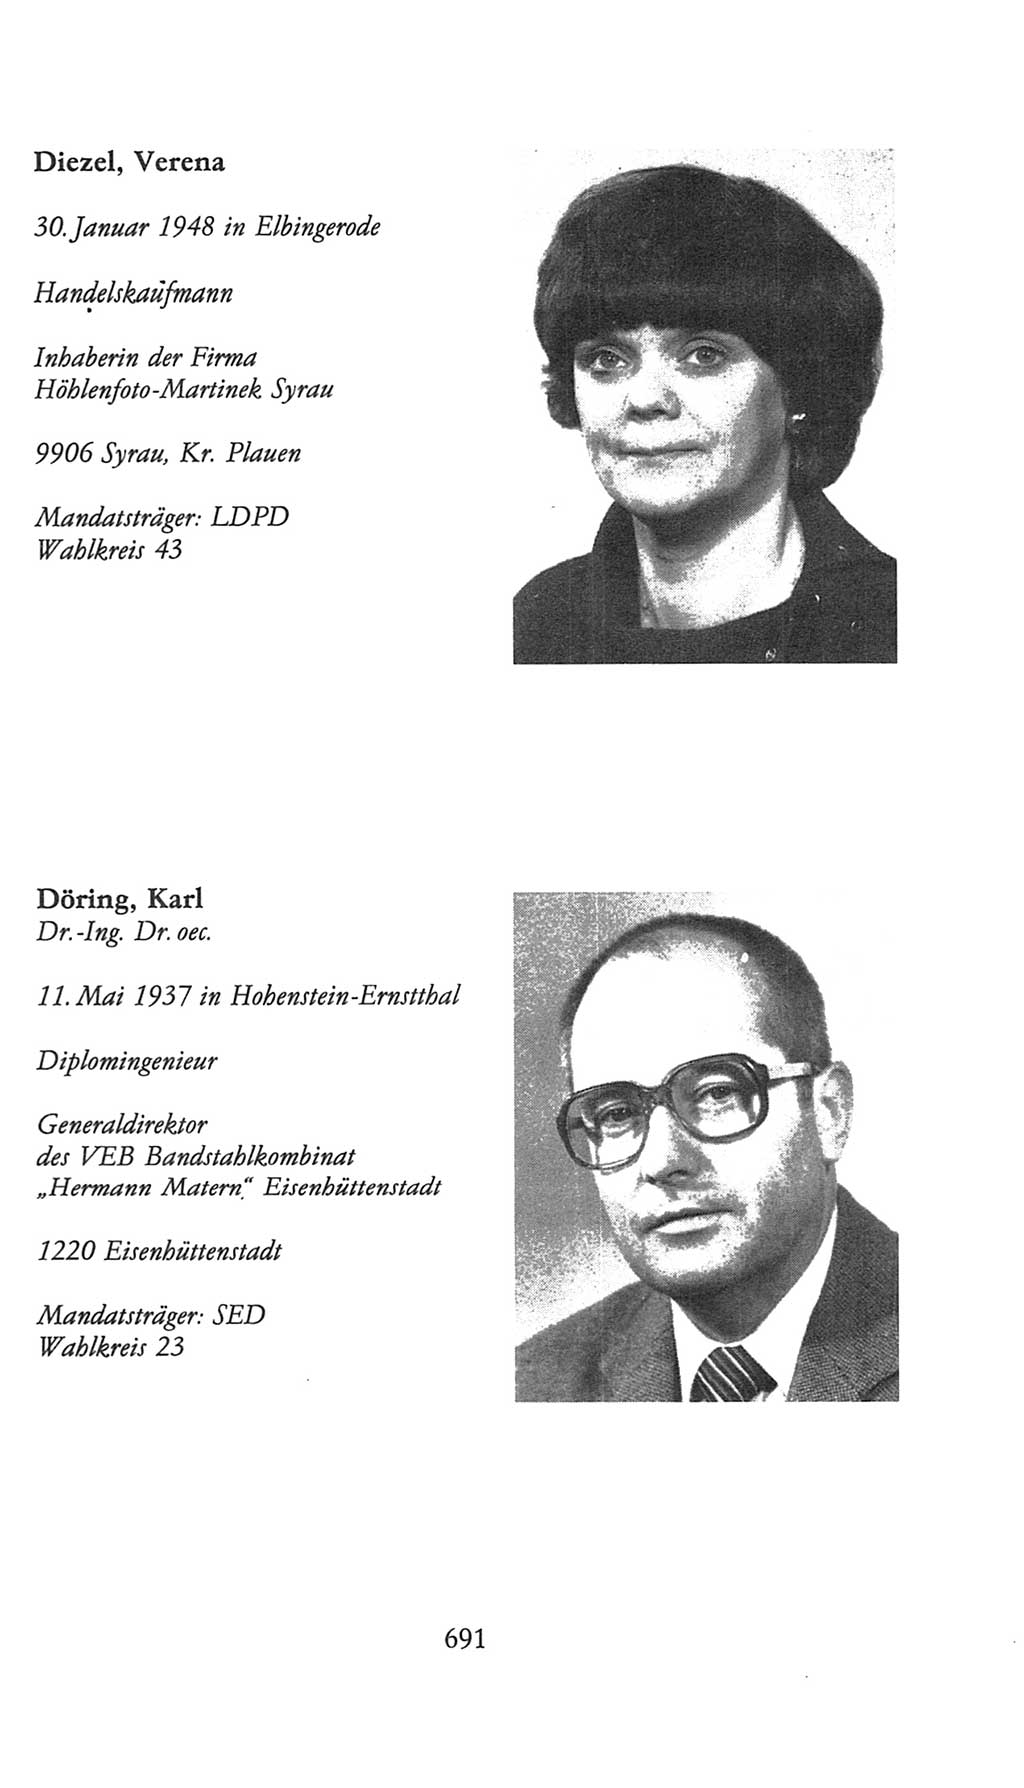 Volkskammer (VK) der Deutschen Demokratischen Republik (DDR), 9. Wahlperiode 1986-1990, Seite 691 (VK. DDR 9. WP. 1986-1990, S. 691)